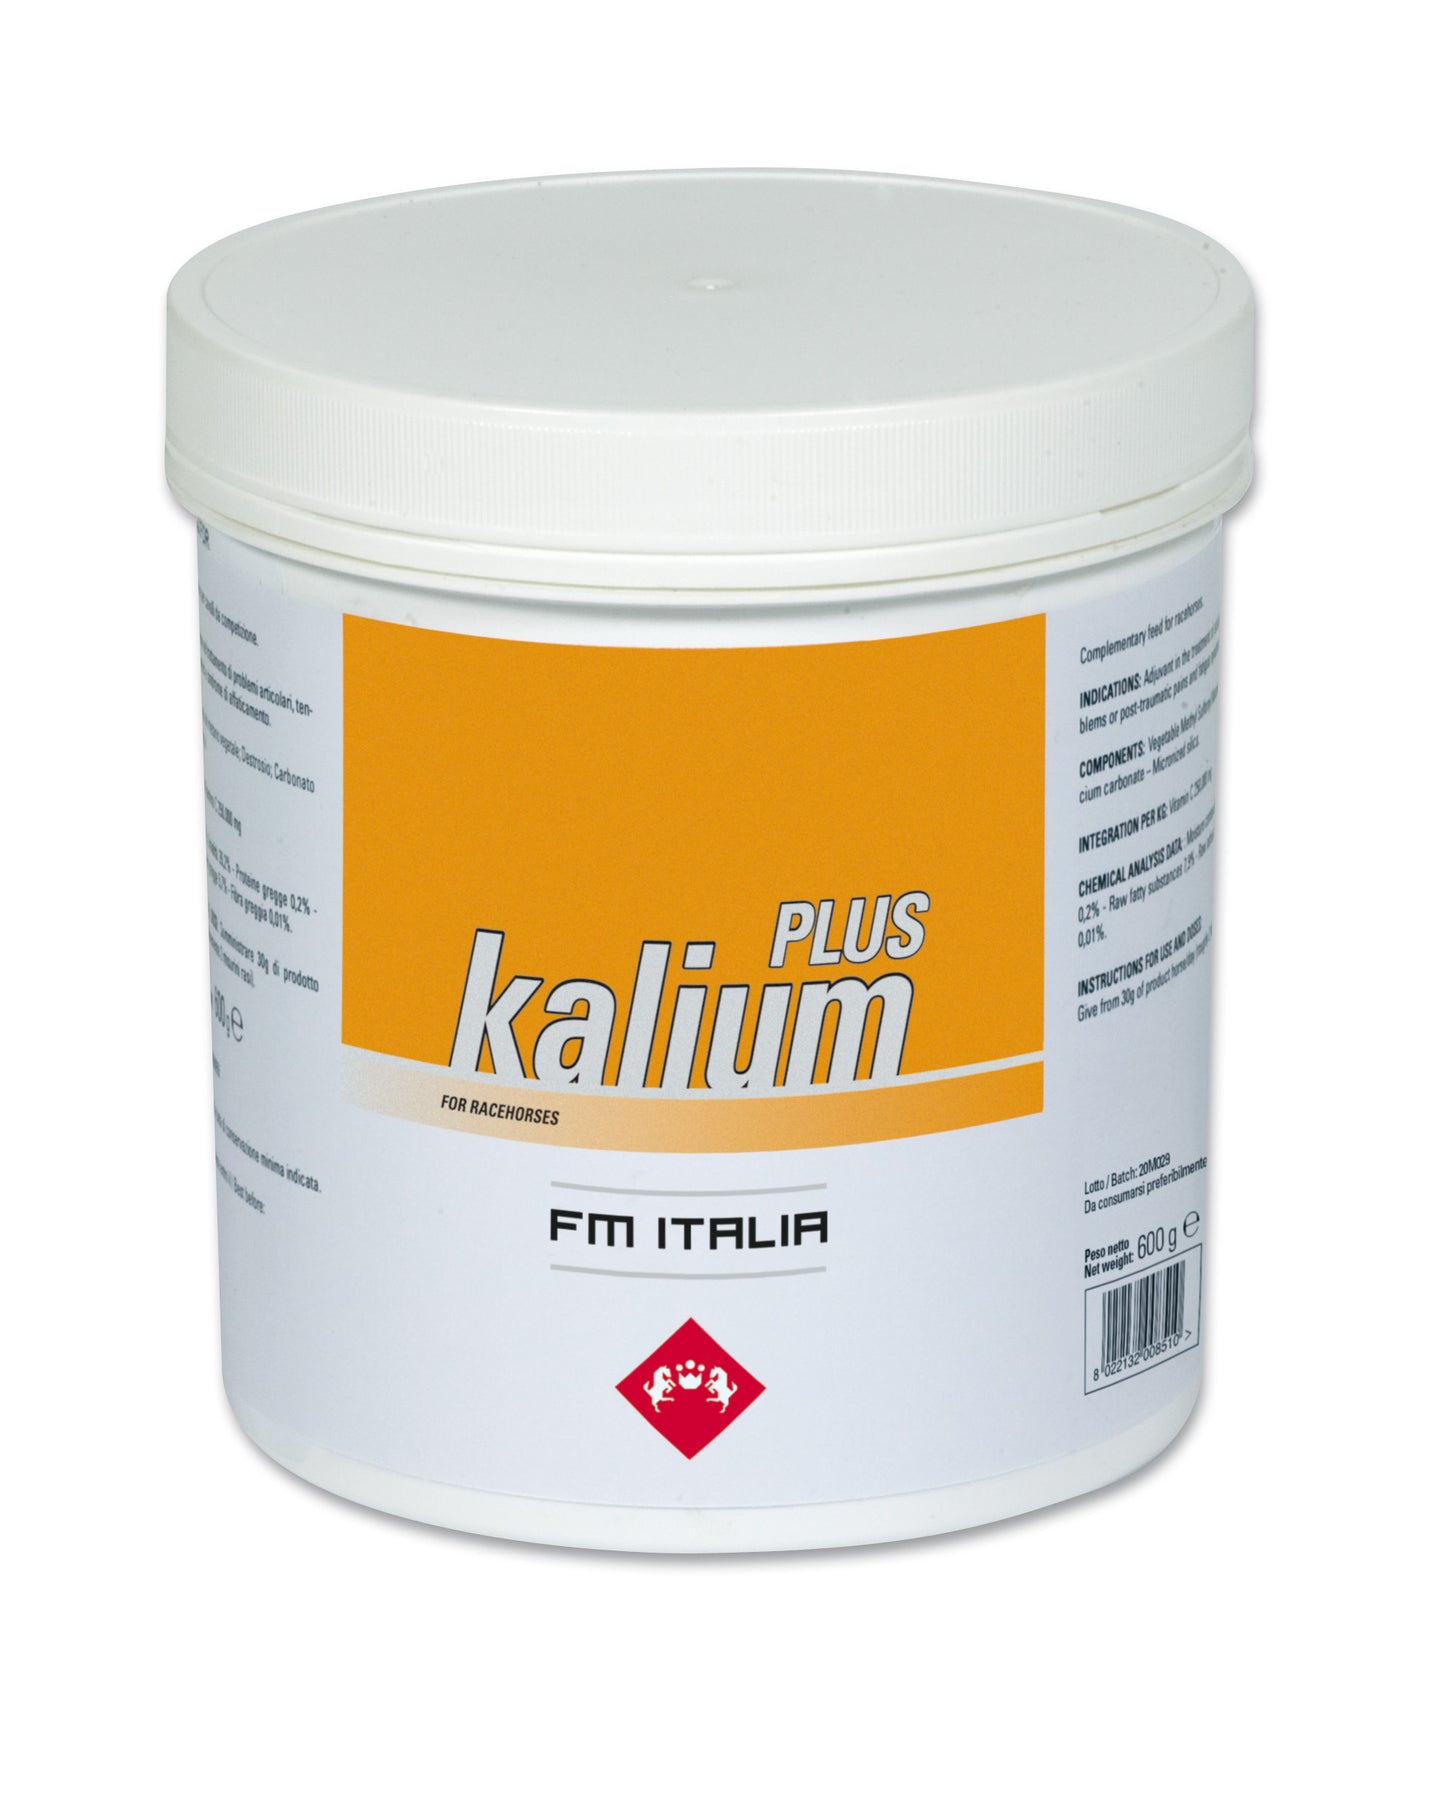 KALIUM PLUS | Powder Supplement with Potassium for Horses